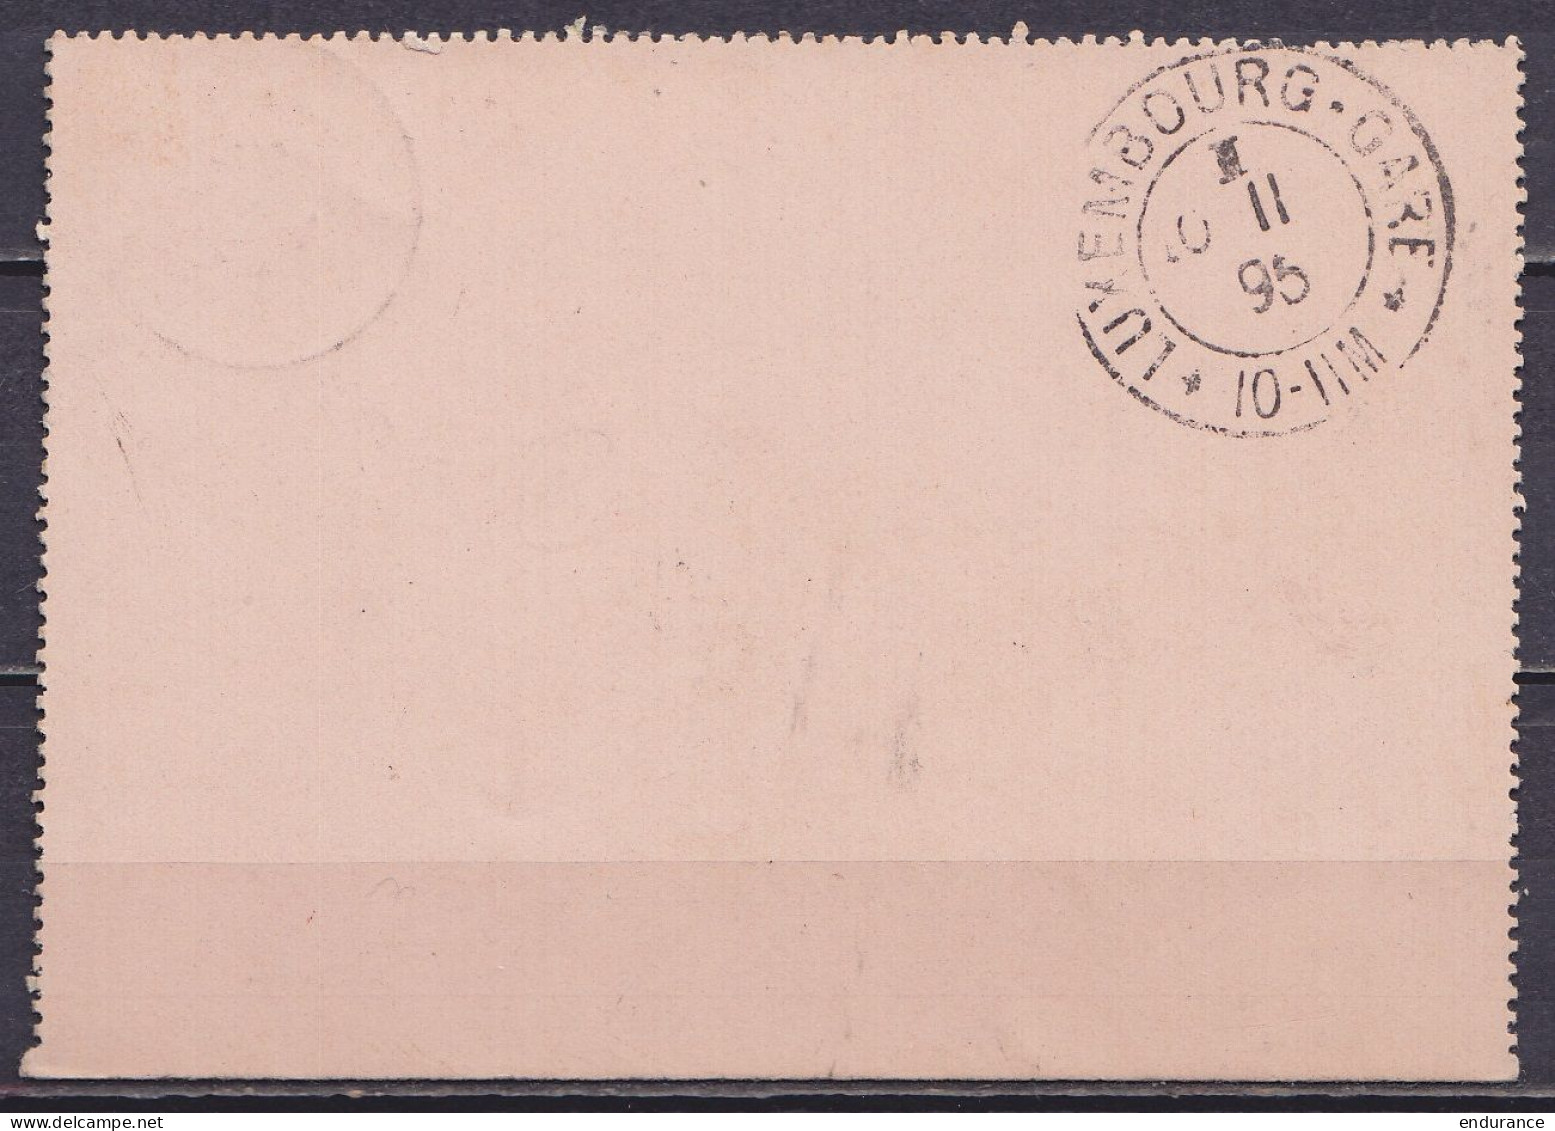 EP Carte-lettre Pour L'étranger 25c (type N°48) Càd LIEGE (ST-GILLES) /9 NOV 1895 Pour LUXEMBOURG Gare (au Dos: Càd Arri - Cartes-lettres